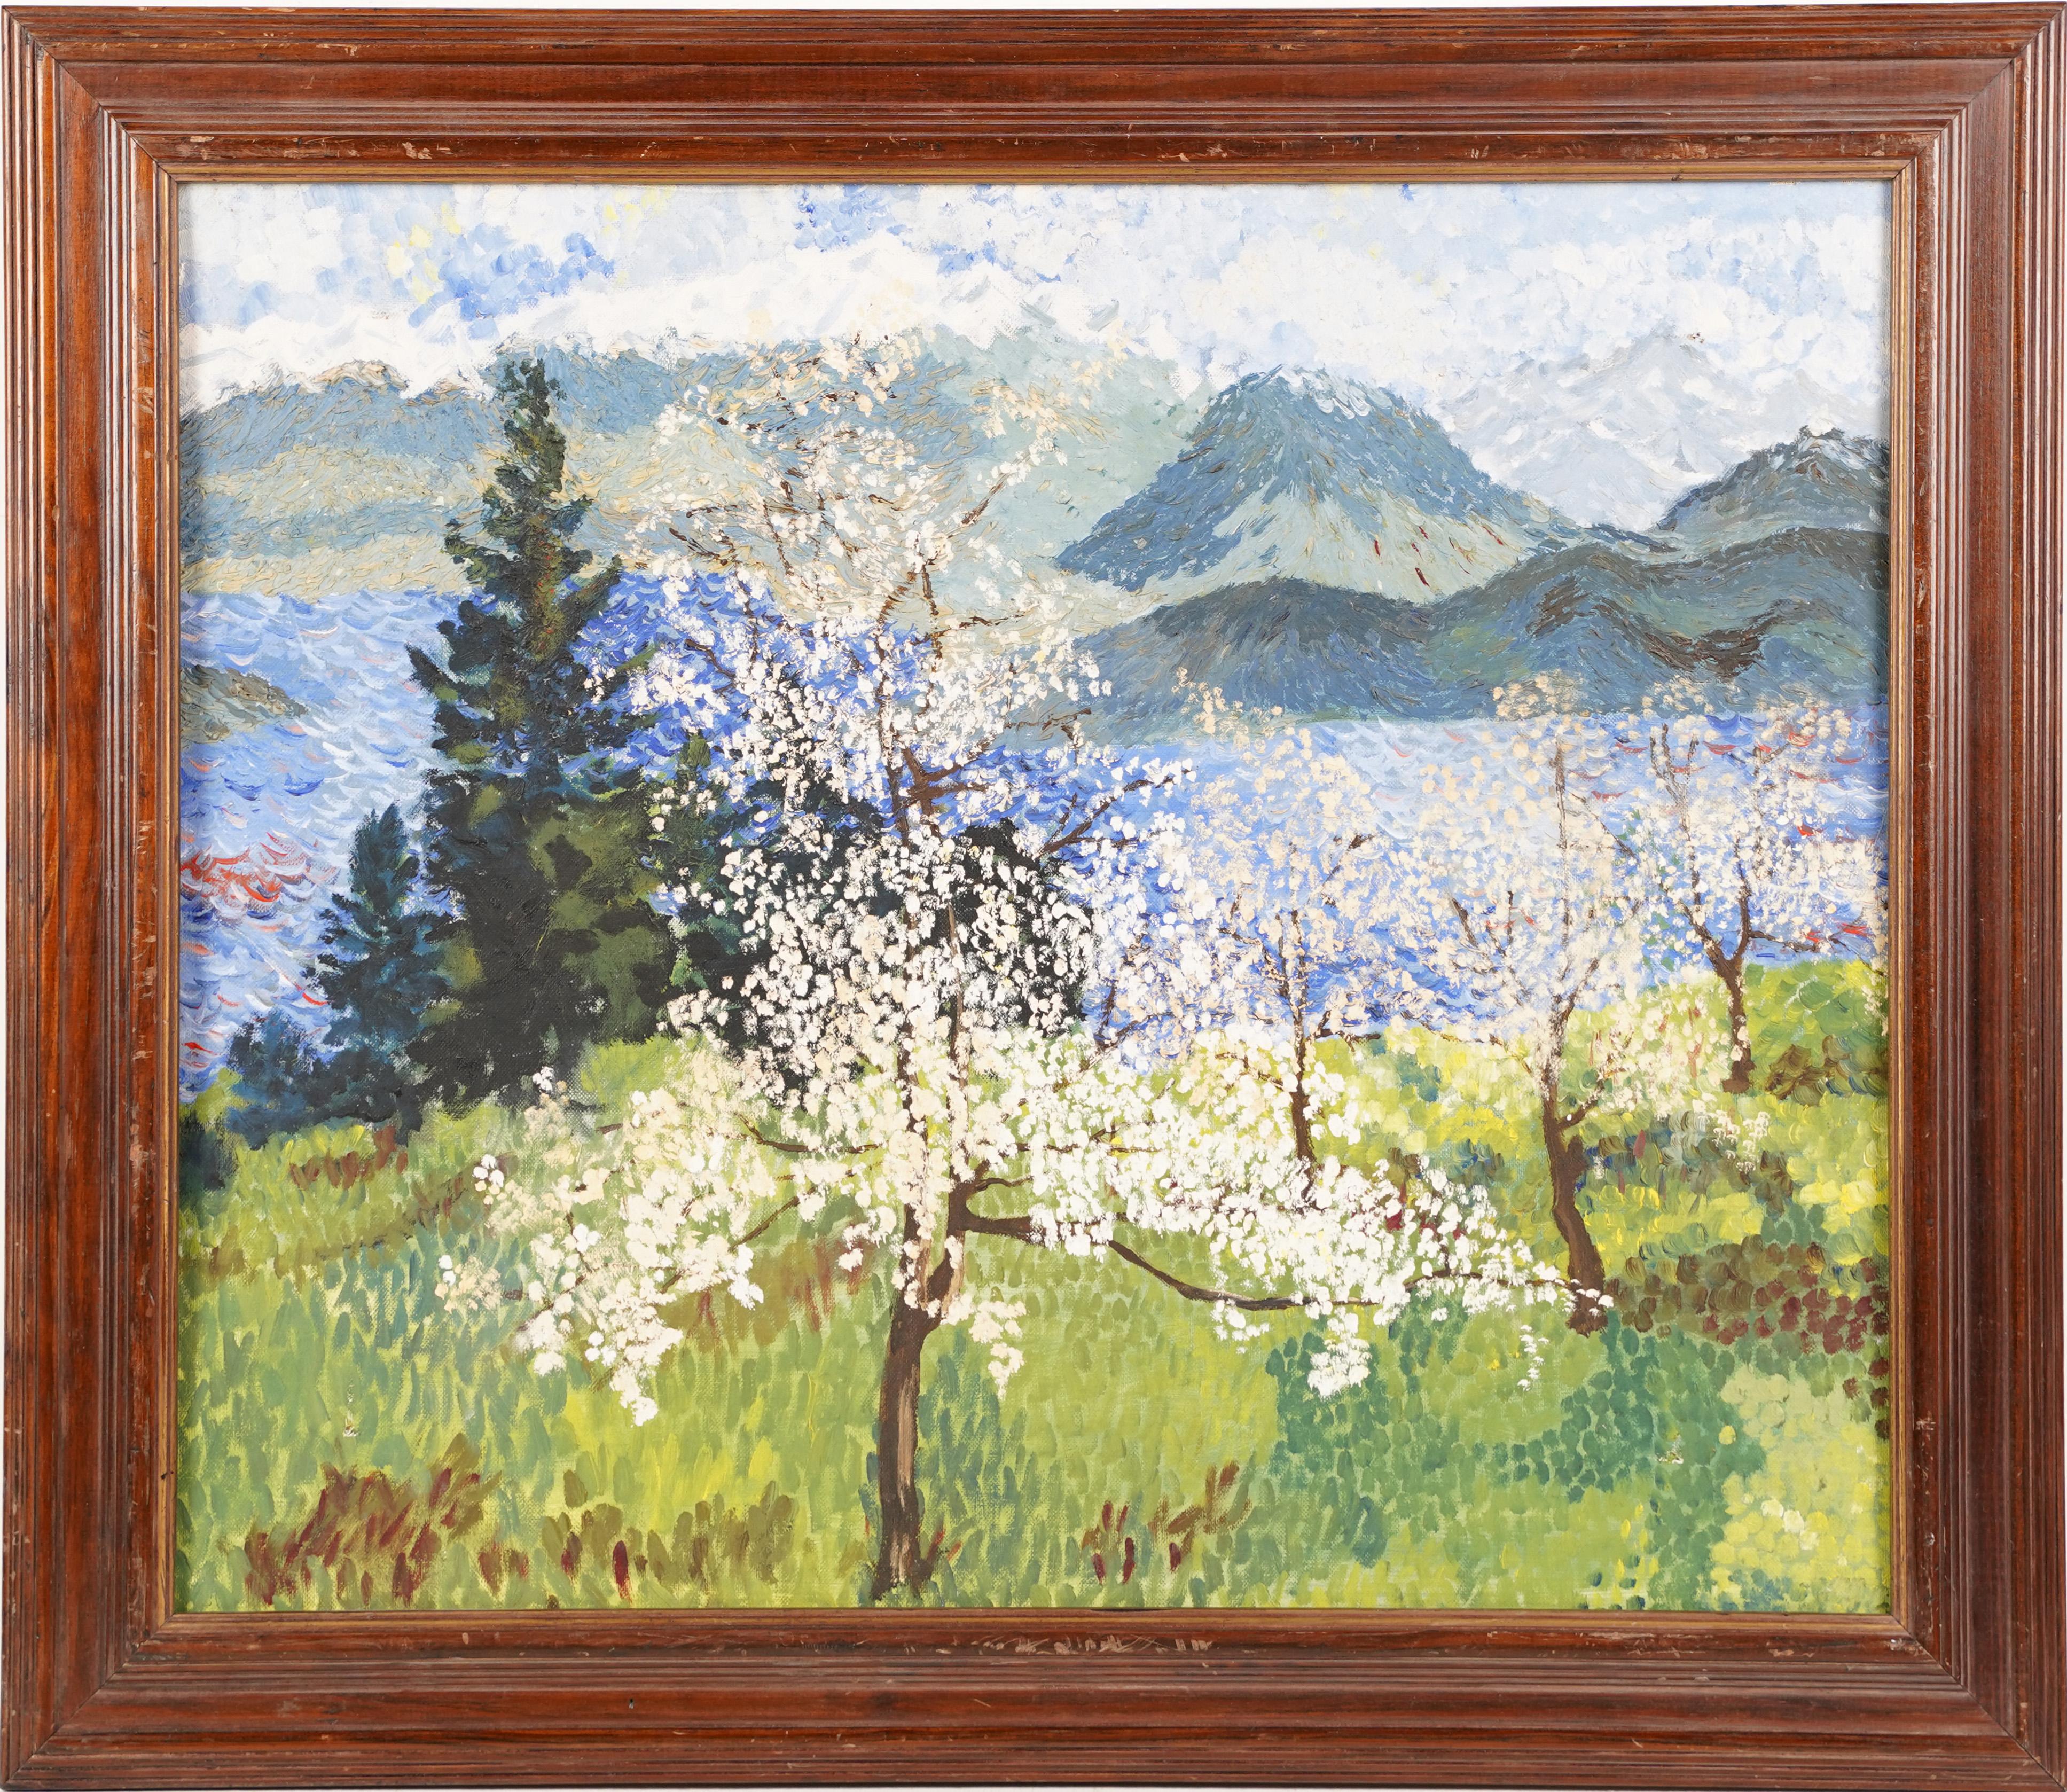 Landscape Painting Unknown - Peinture à l'huile impressionniste américaine de paysage pointilliste de fleurs de cerisier